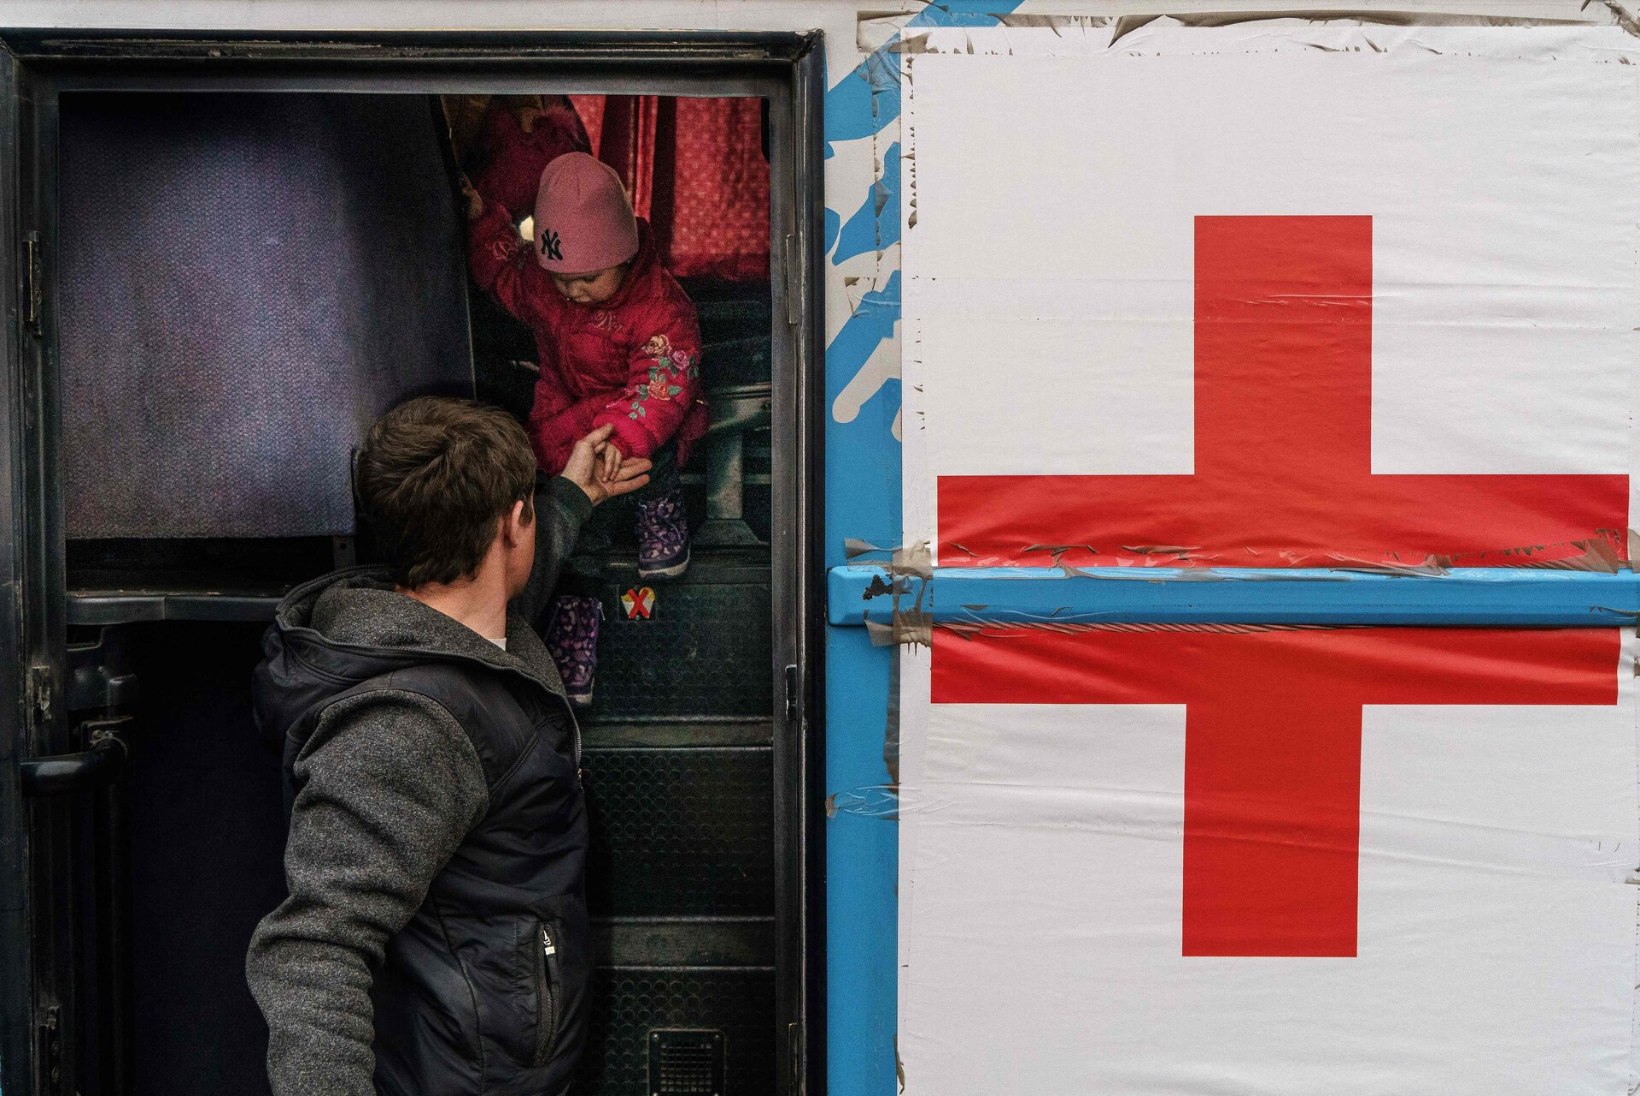 BLOGI | Punane Rist pidi katkestama Mariupolist tsiviilelanike evakueerimise operatsiooni: tingimused muutsid jätkamise võimatuks, puudusid turvagarantiid